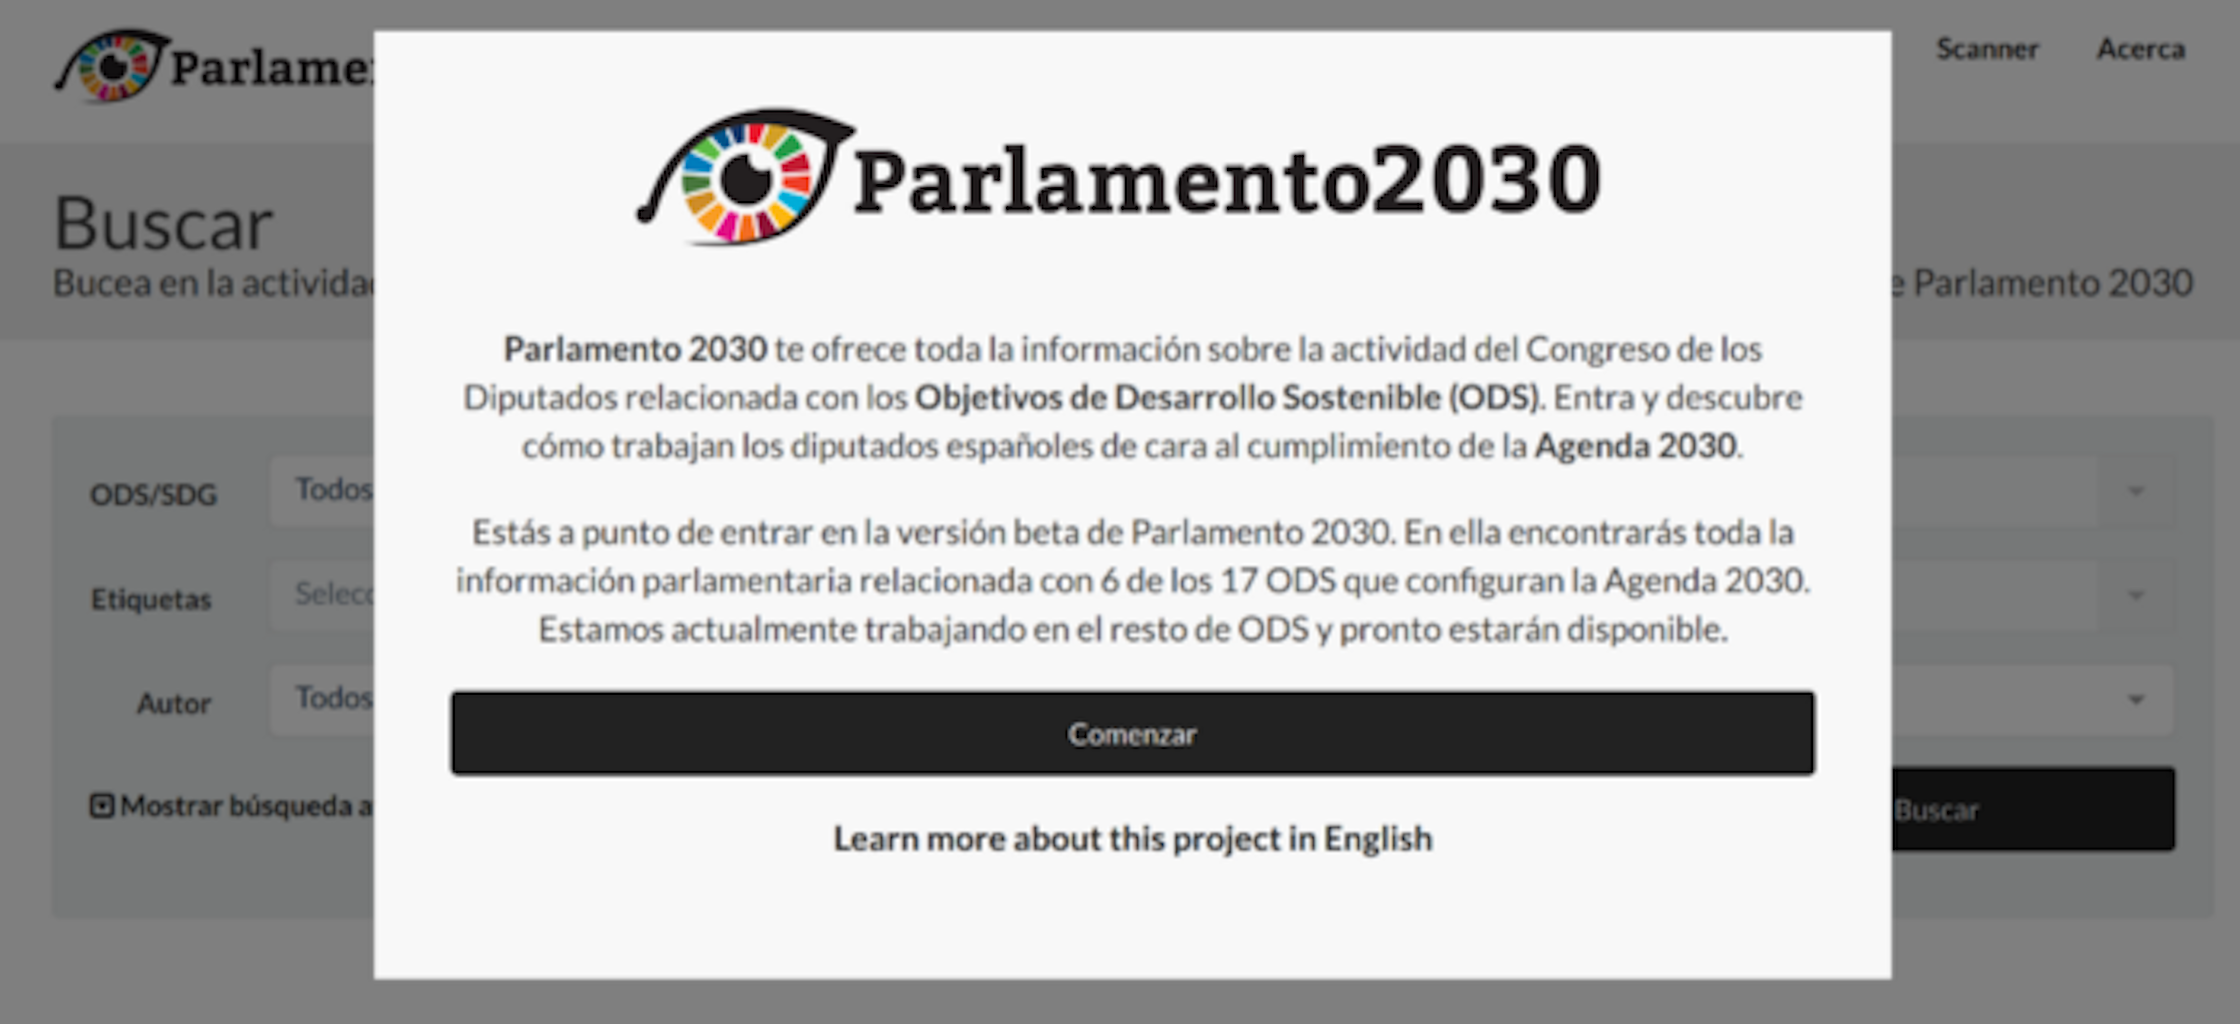 Parlamento 2030 seleccionada por la OCDE como herramienta hacia el Gobierno Abierto